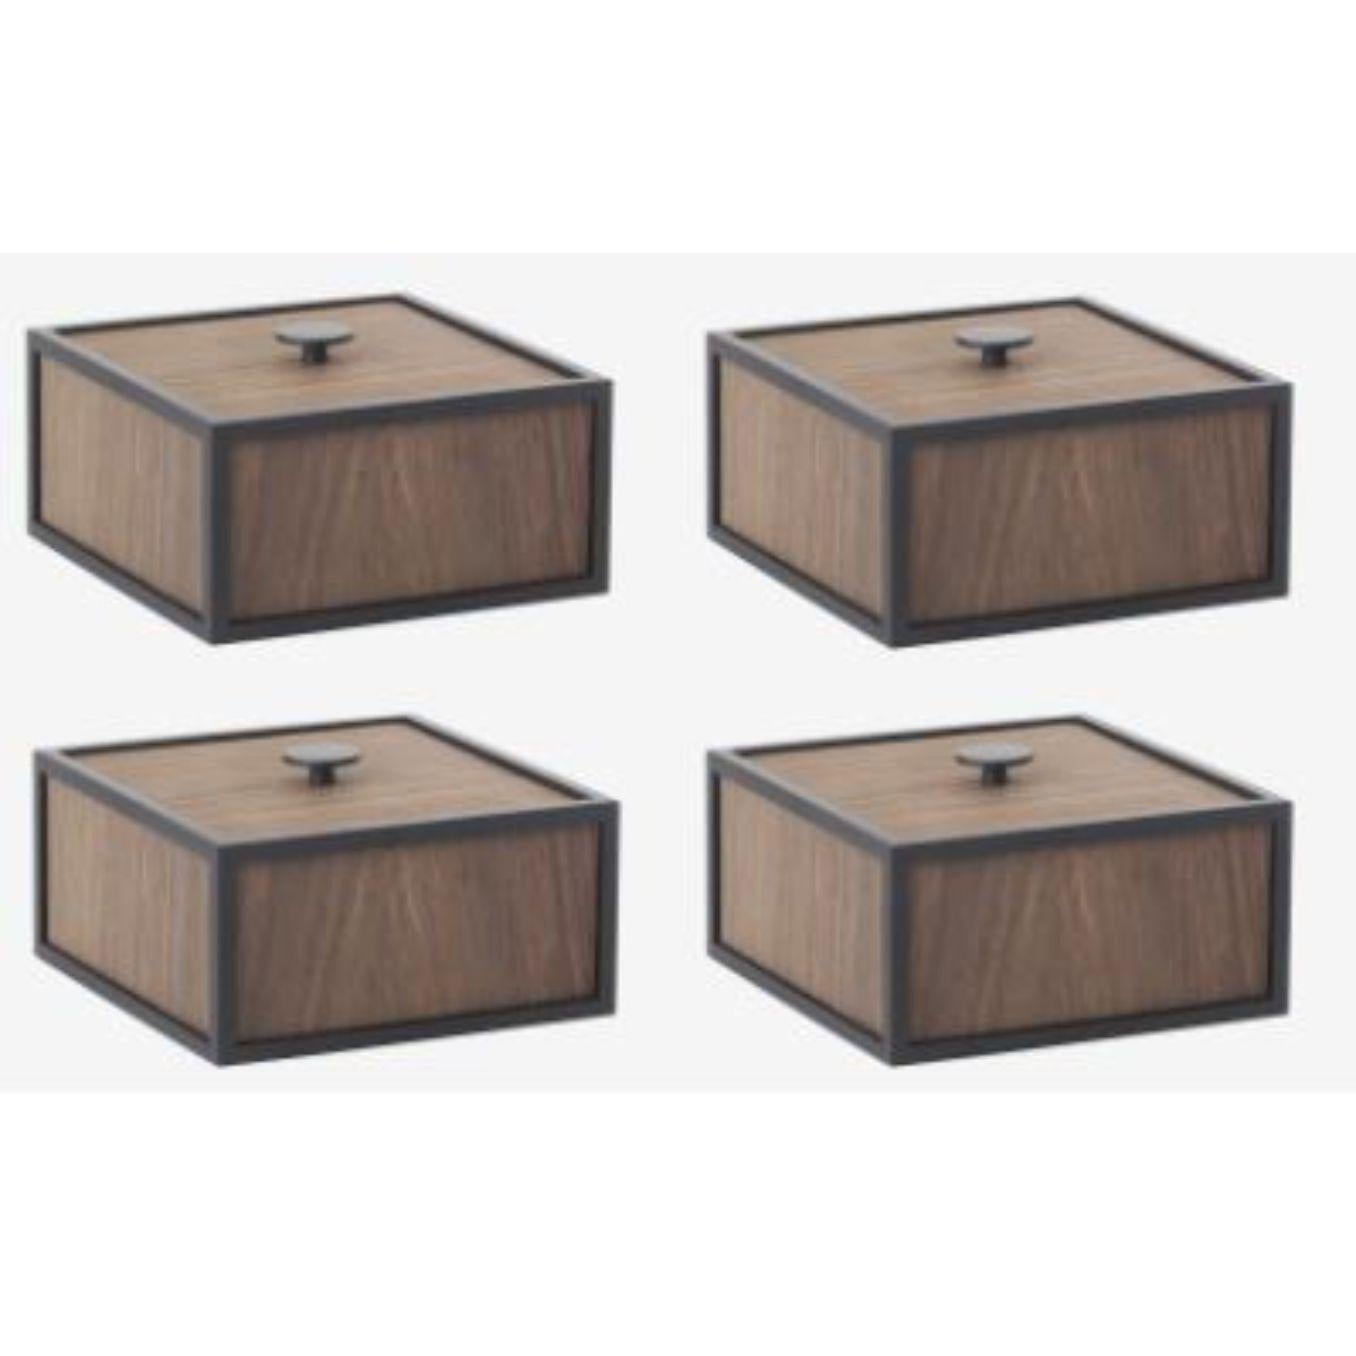 Ensemble de 4 boîtes 14 en chêne fumé de Lassen
Dimensions : D 10 x L 10 x H 7 cm 
Matériaux : Finér, mélaminé, mélaminé, métal, placage
Poids : 1.10 kg

Frame Box est une boîte carrée de forme cubique. Les boîtes simples s'inspirent du bougeoir